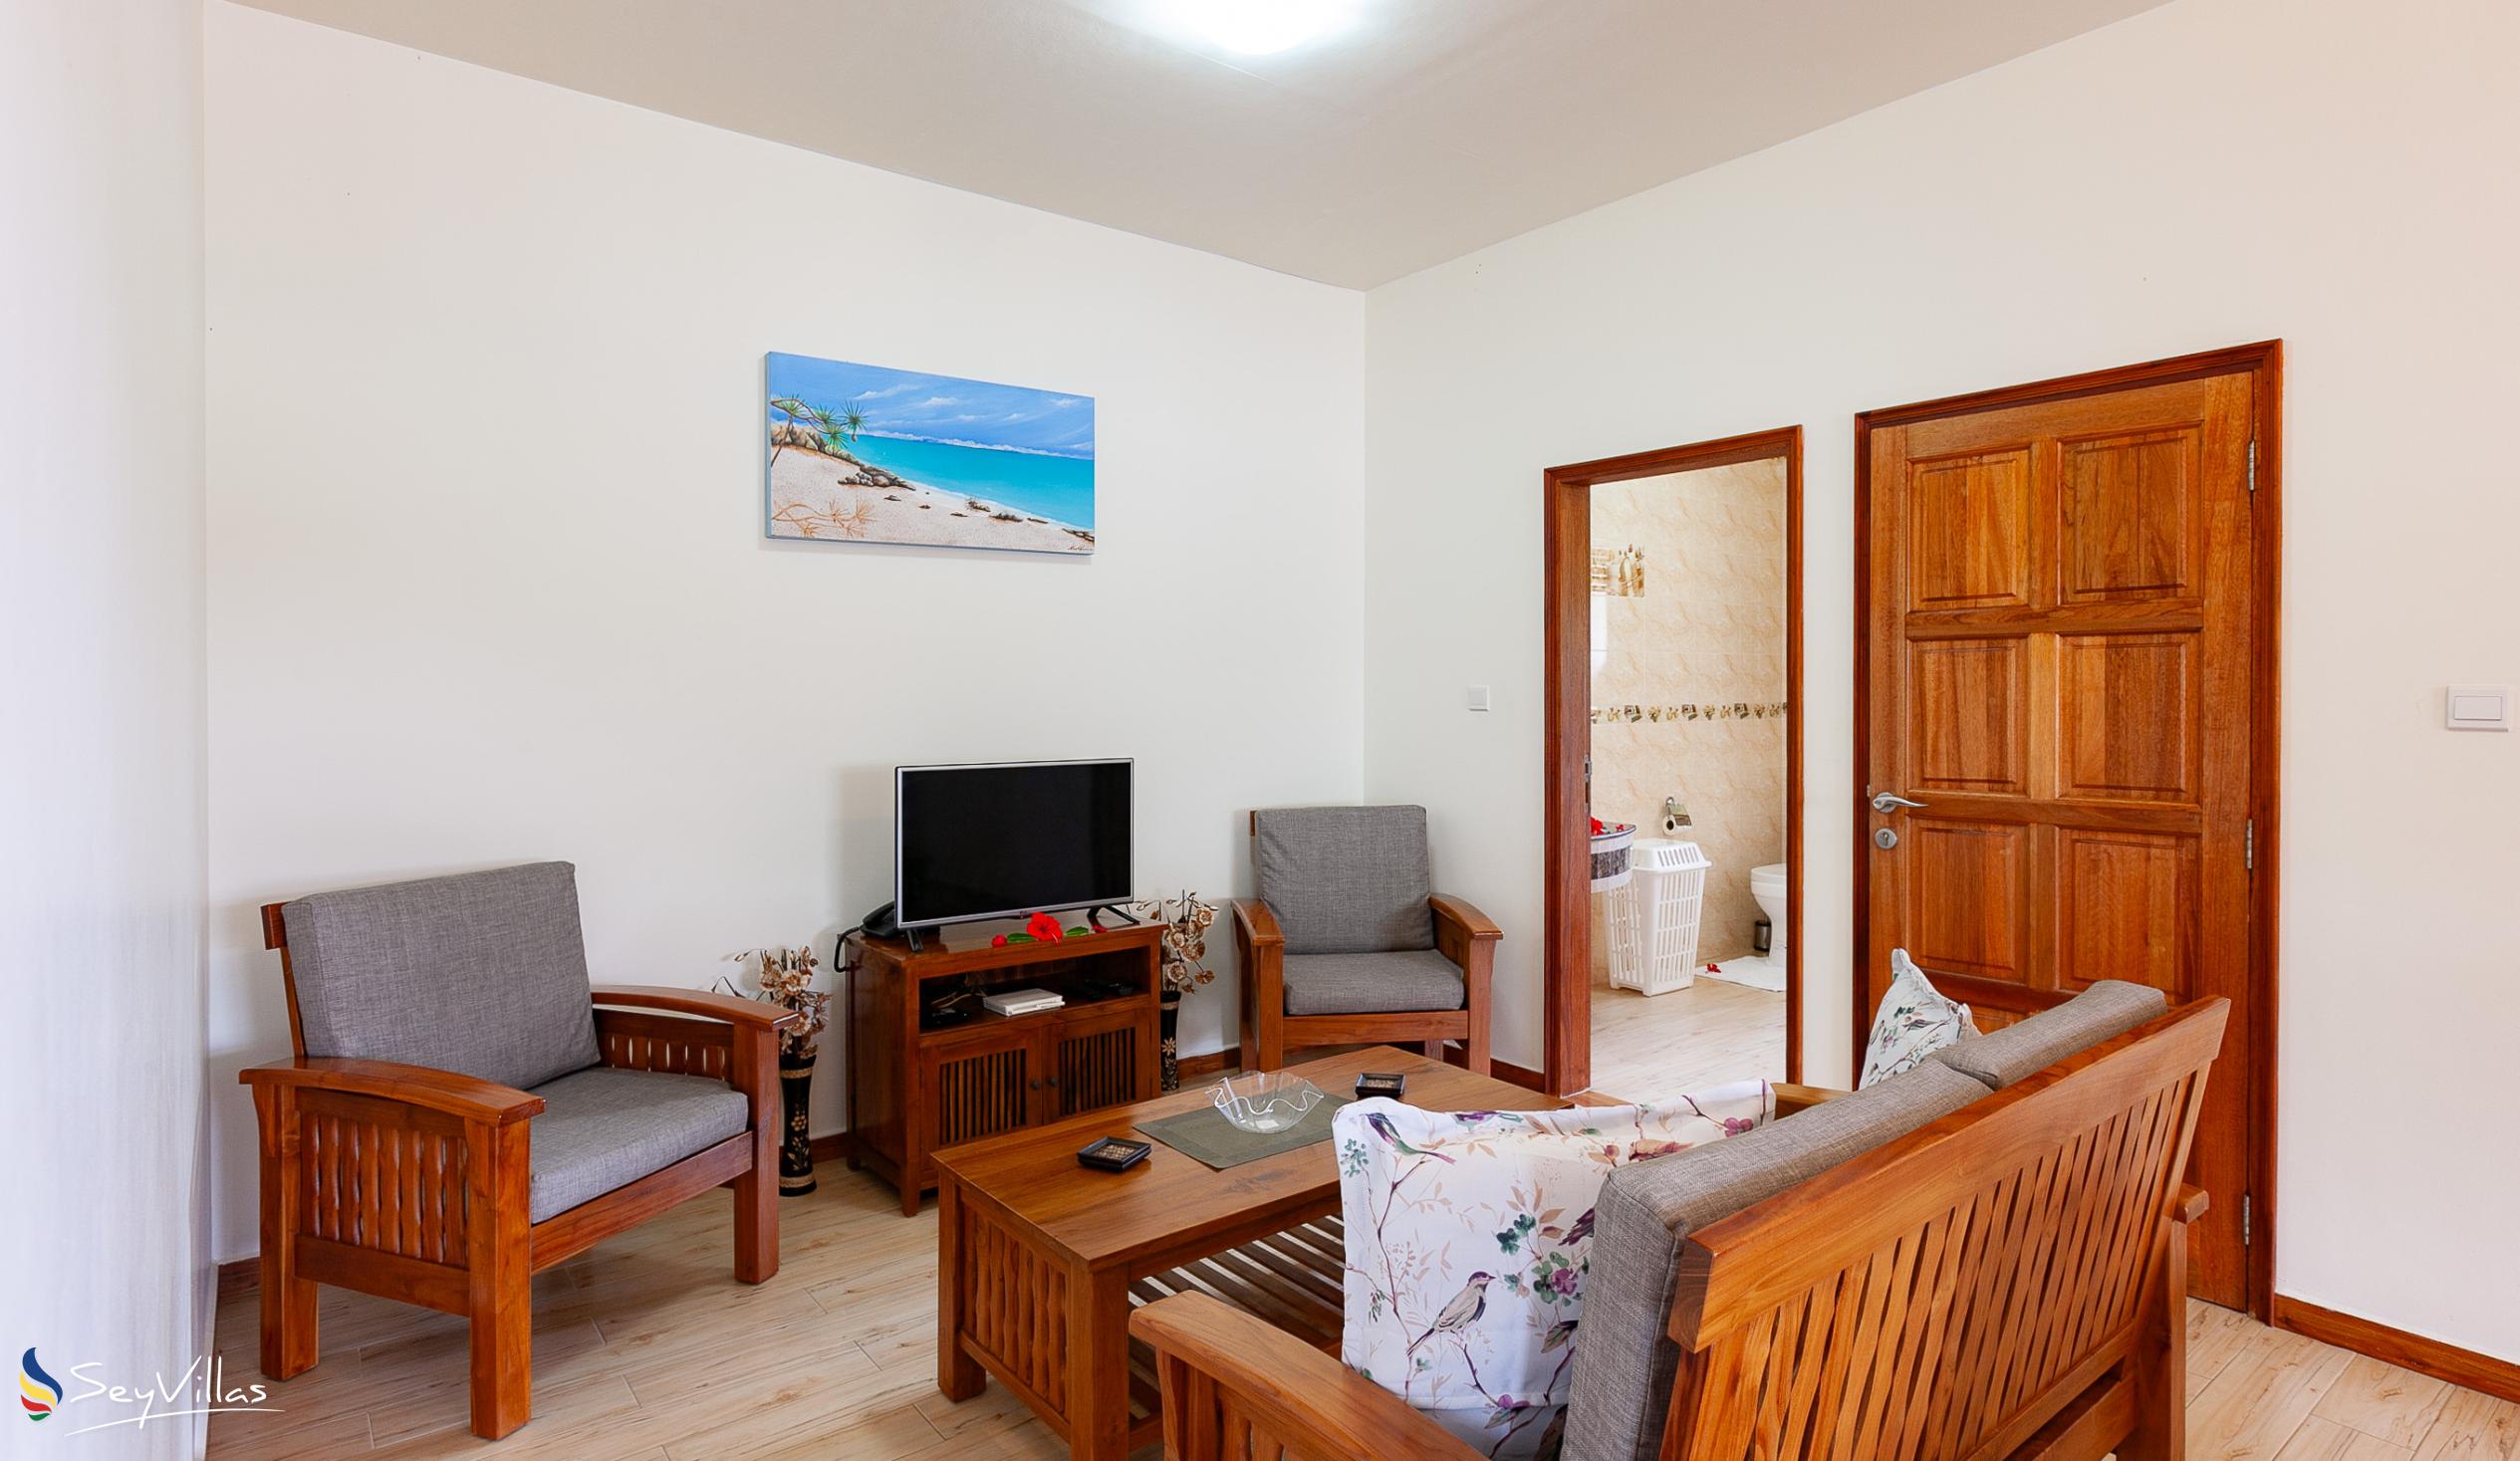 Foto 57: Seashell Beach Villa - Appartamento con 2 camere - Praslin (Seychelles)